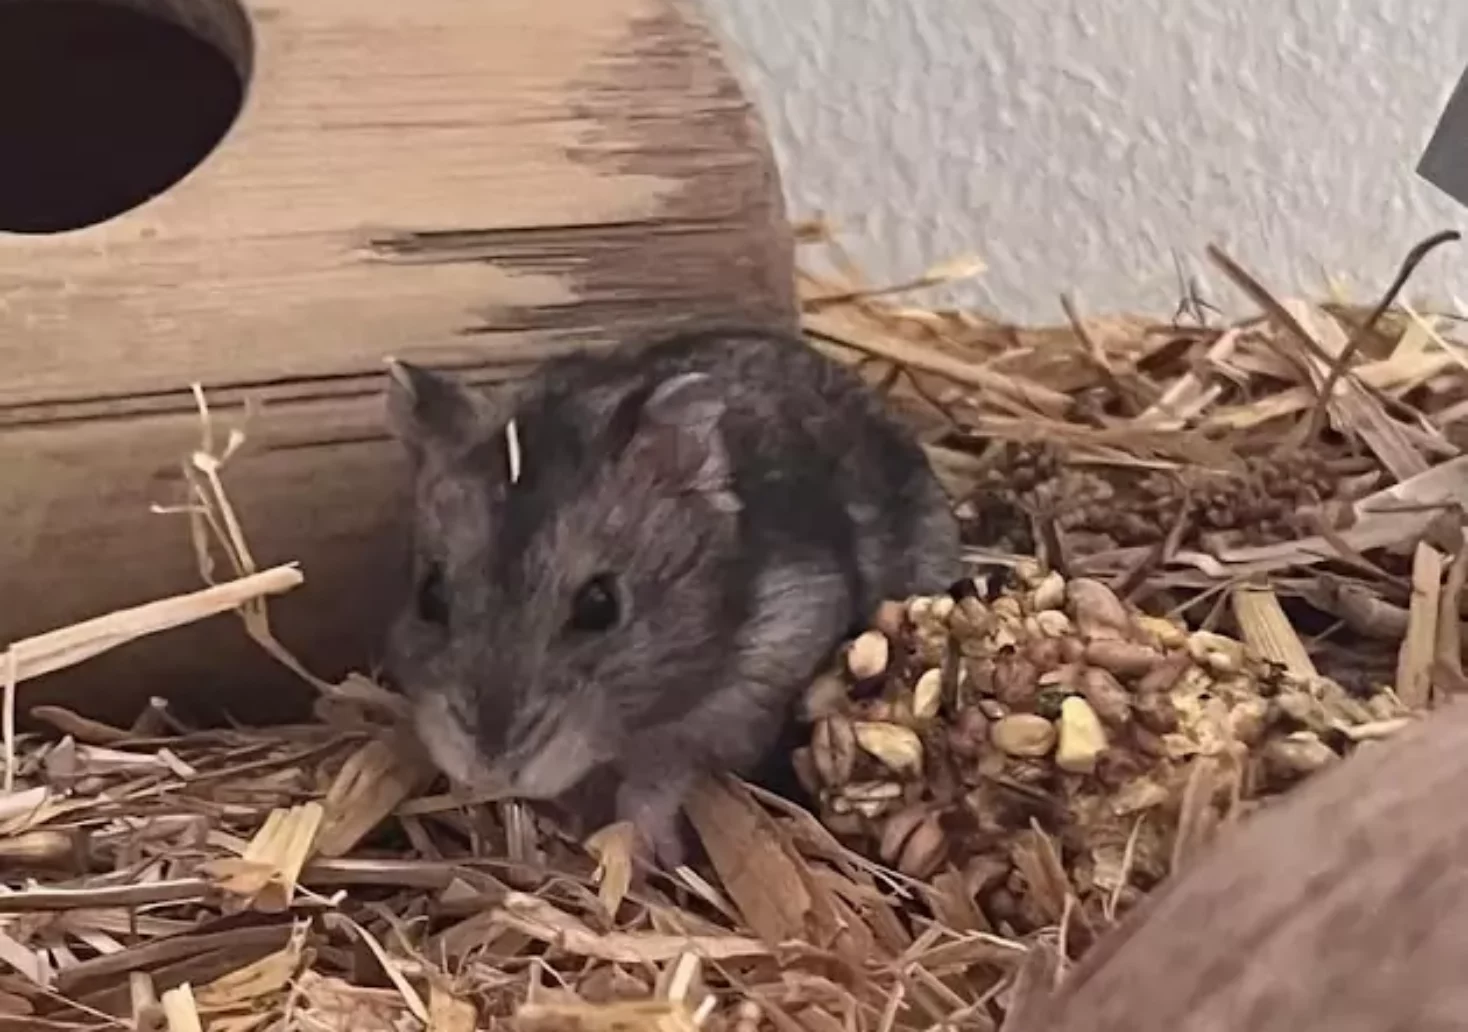 Foto in Beitrag von 5min.at: Zu sehen ist einer der Hamster, der traurigerweise verstorben ist.